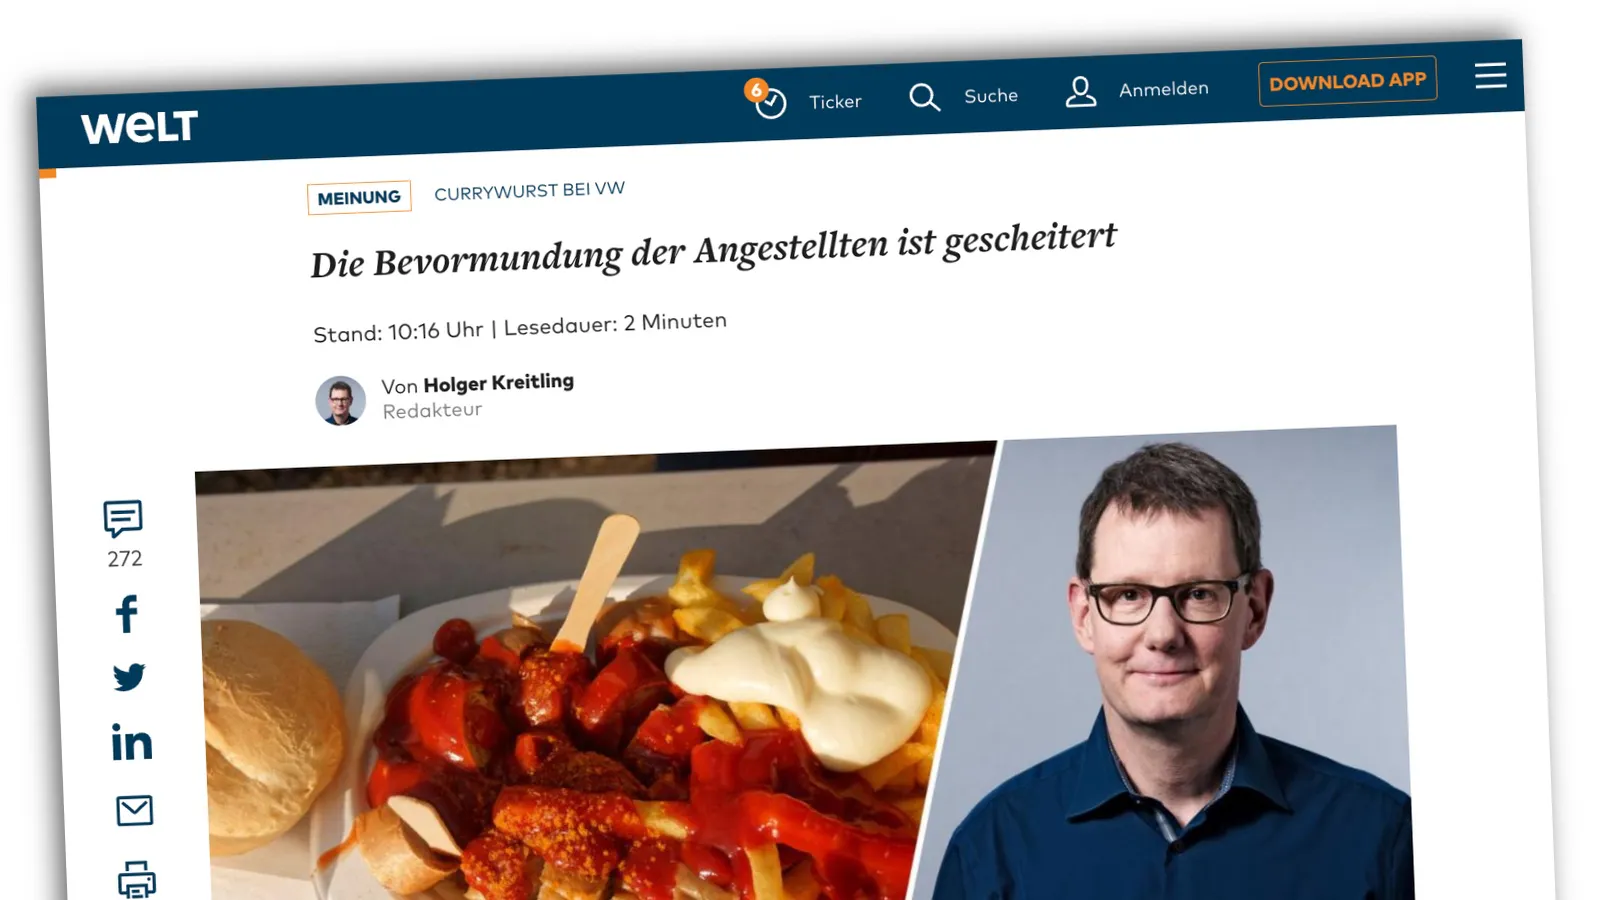 Artikel von Welt.de mit der Überschrift: „Die Bevormundung der Angestellten ist gescheitert“, darunter ein Foto von Currywurst und Pommes und ein Foto des Autors.